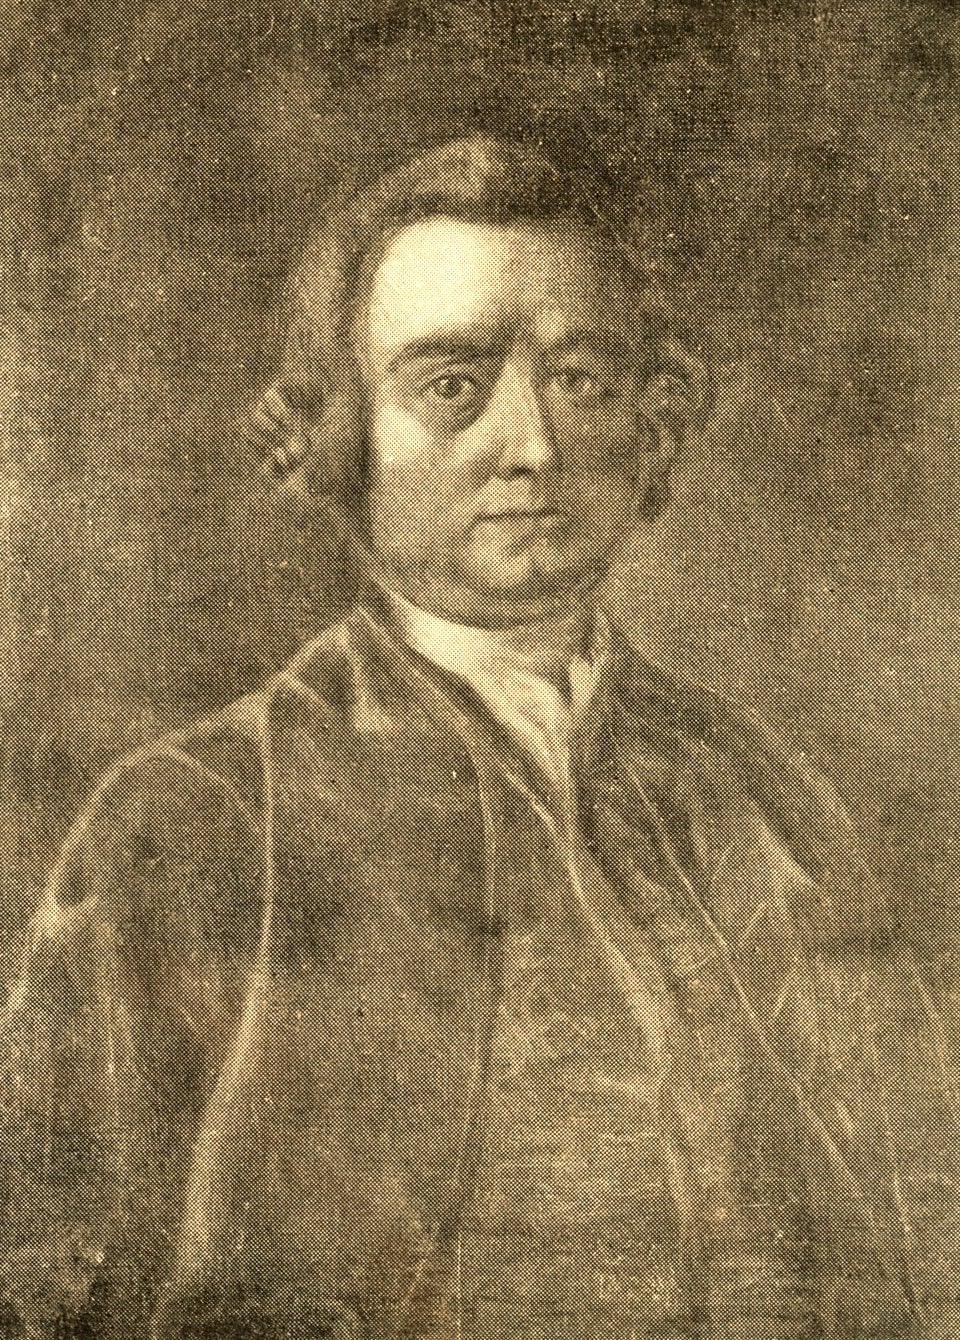 Richard Penn, Jr., c. 1780